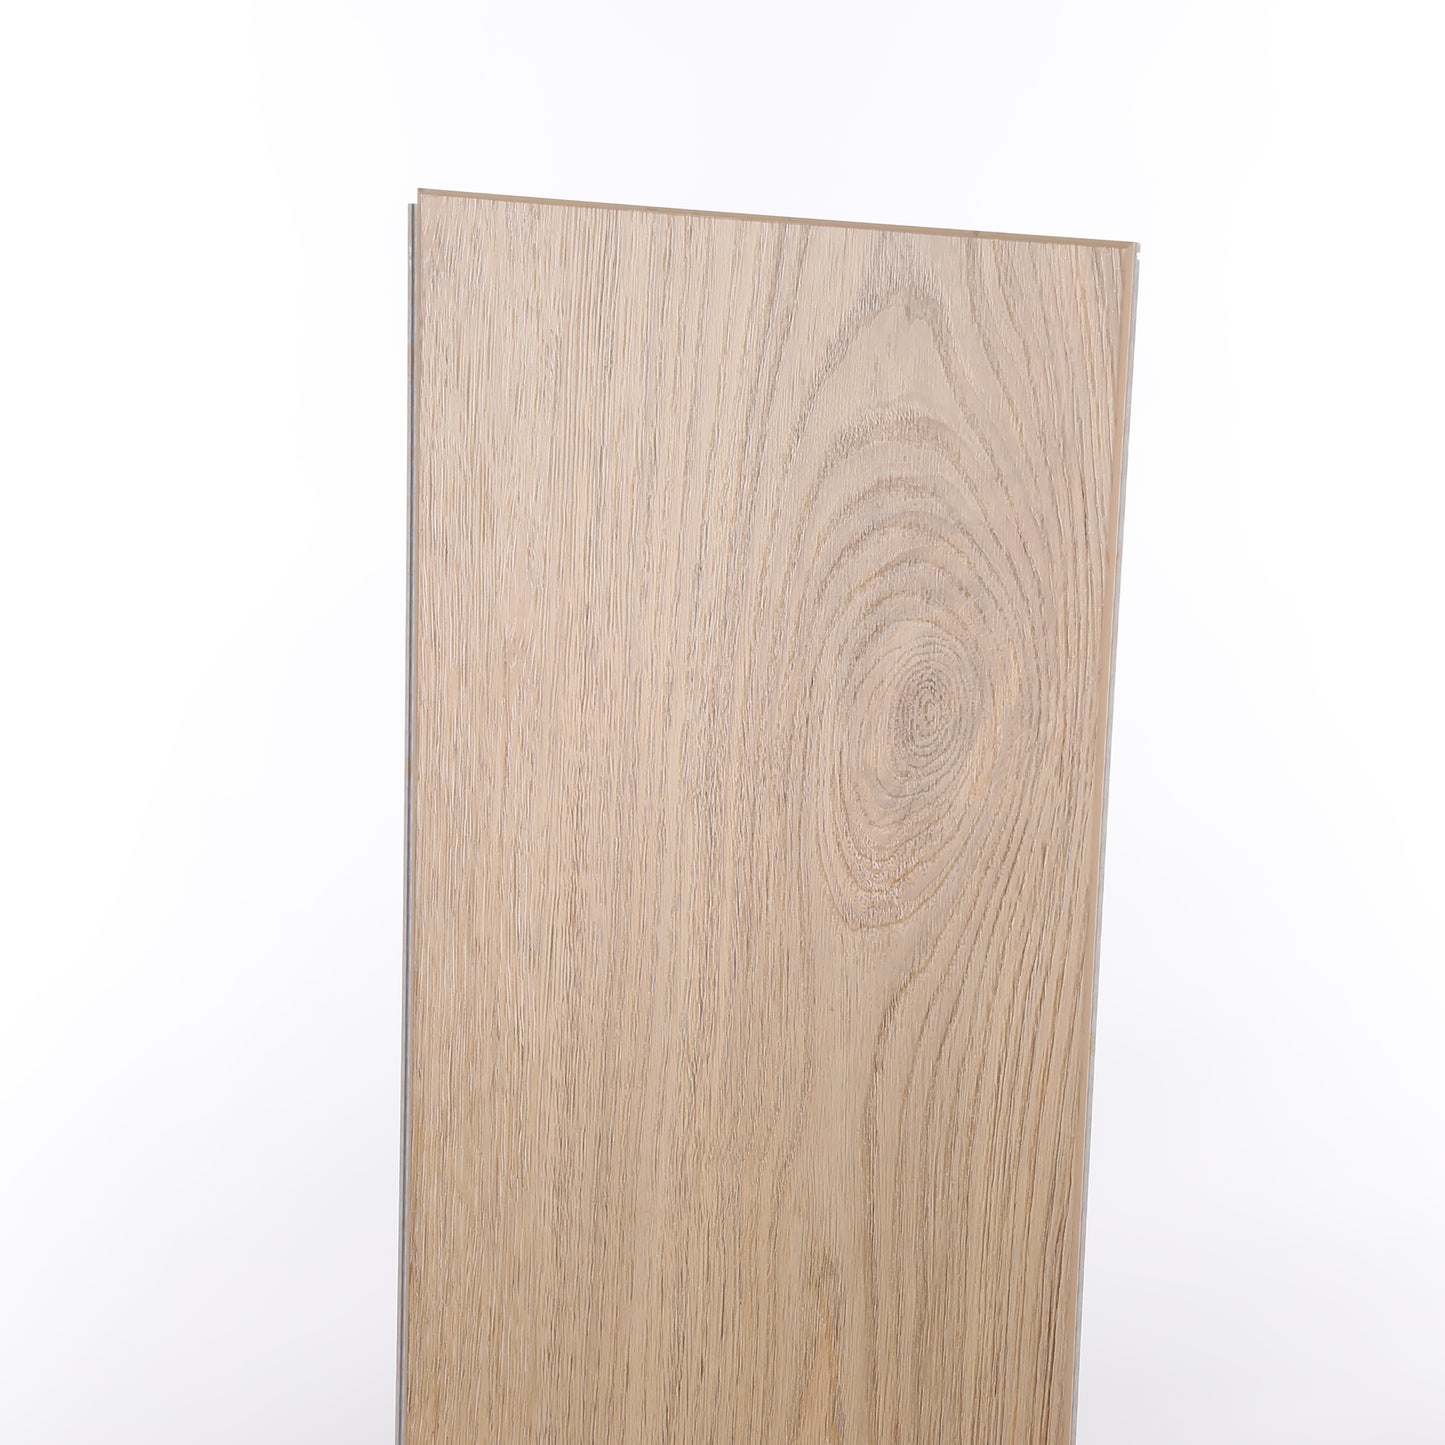 6mm Butterscotch EIR HDPC® Waterproof Luxury Vinyl Plank Flooring 9.13 in. Wide x 60 in. Long